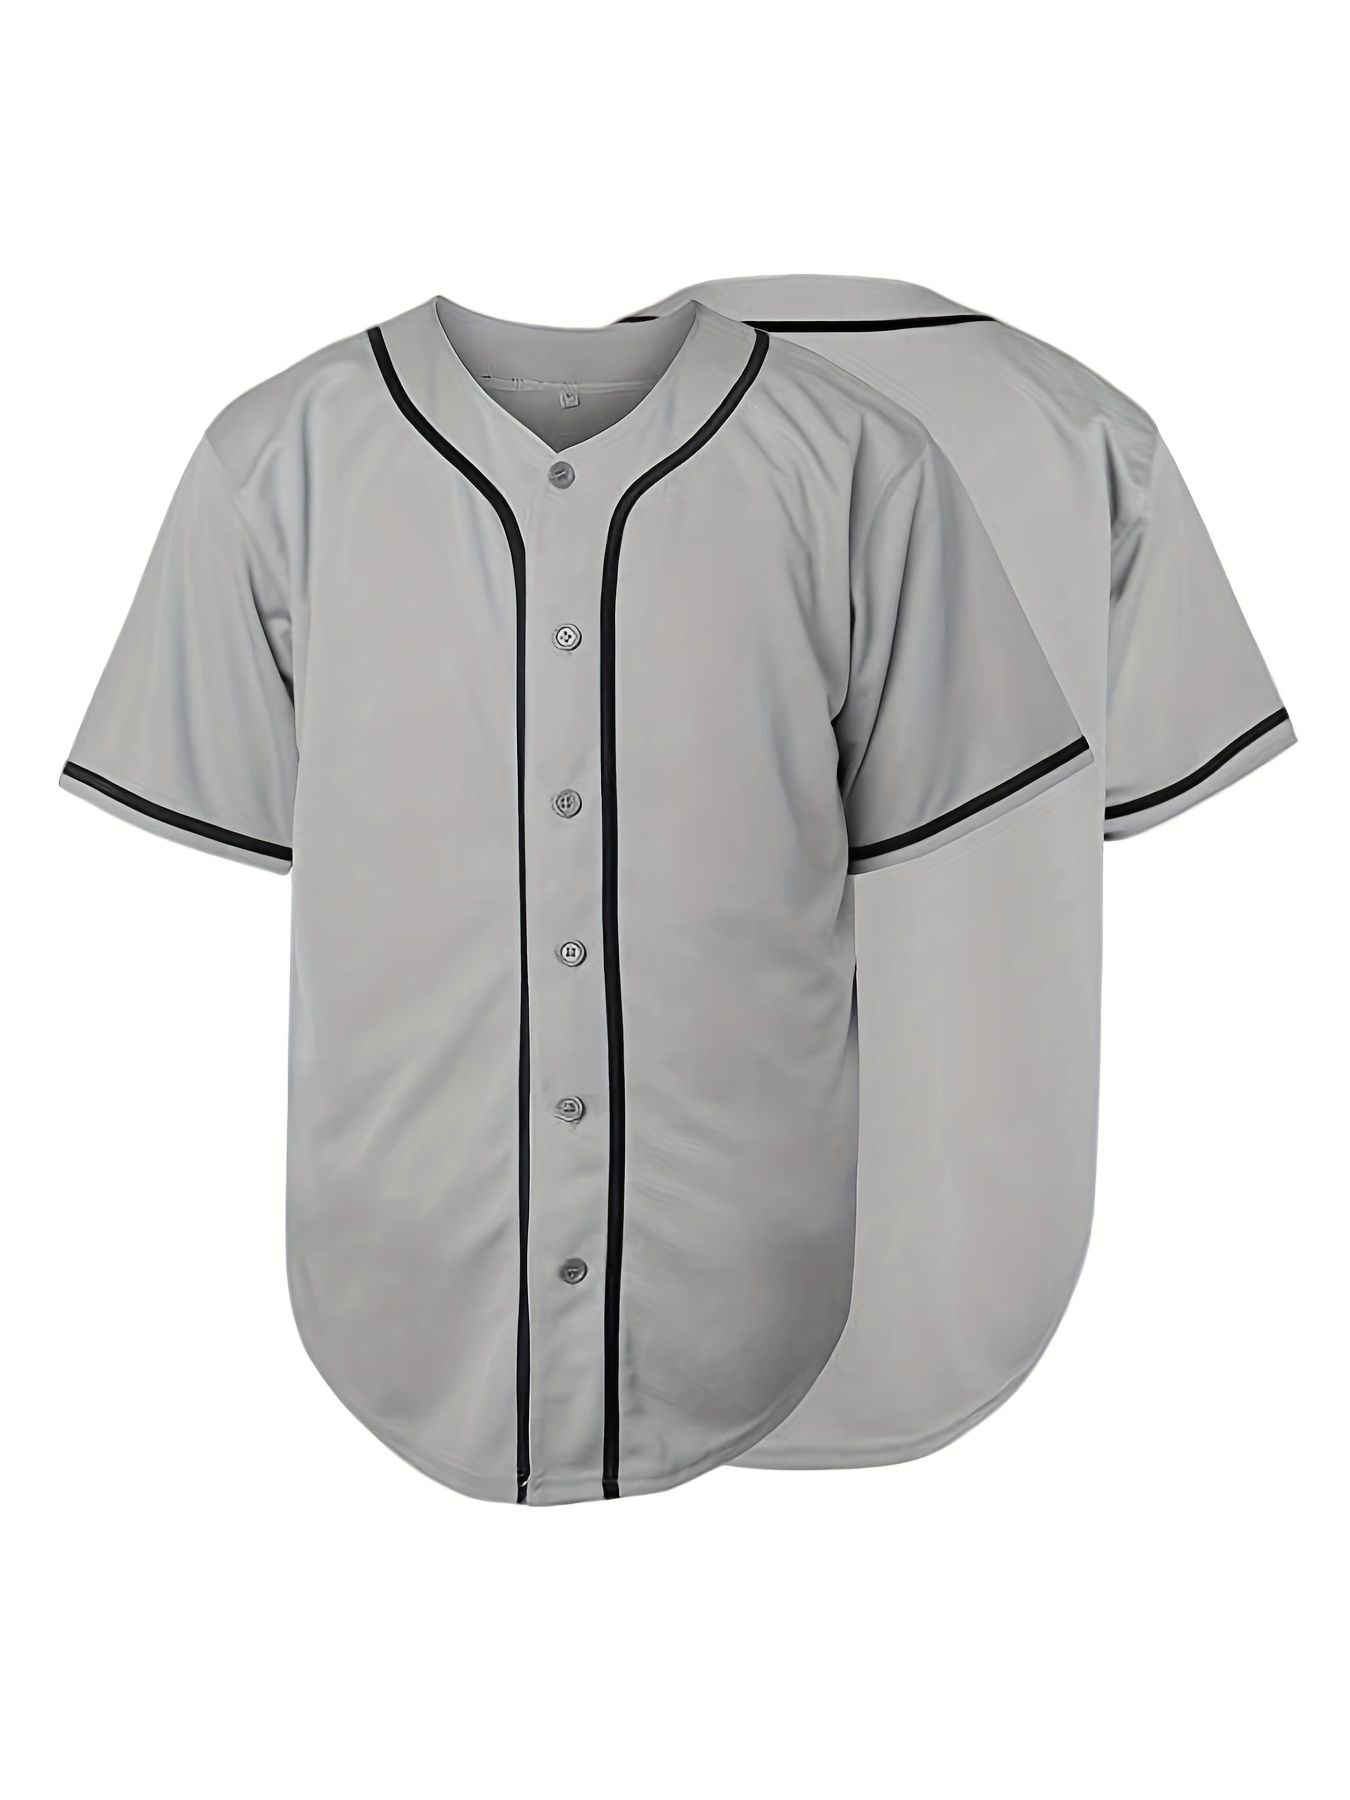 Camiseta de béisbol clásica para hombre: elegante camisa de manga corta con  botones para entrenamiento y competición